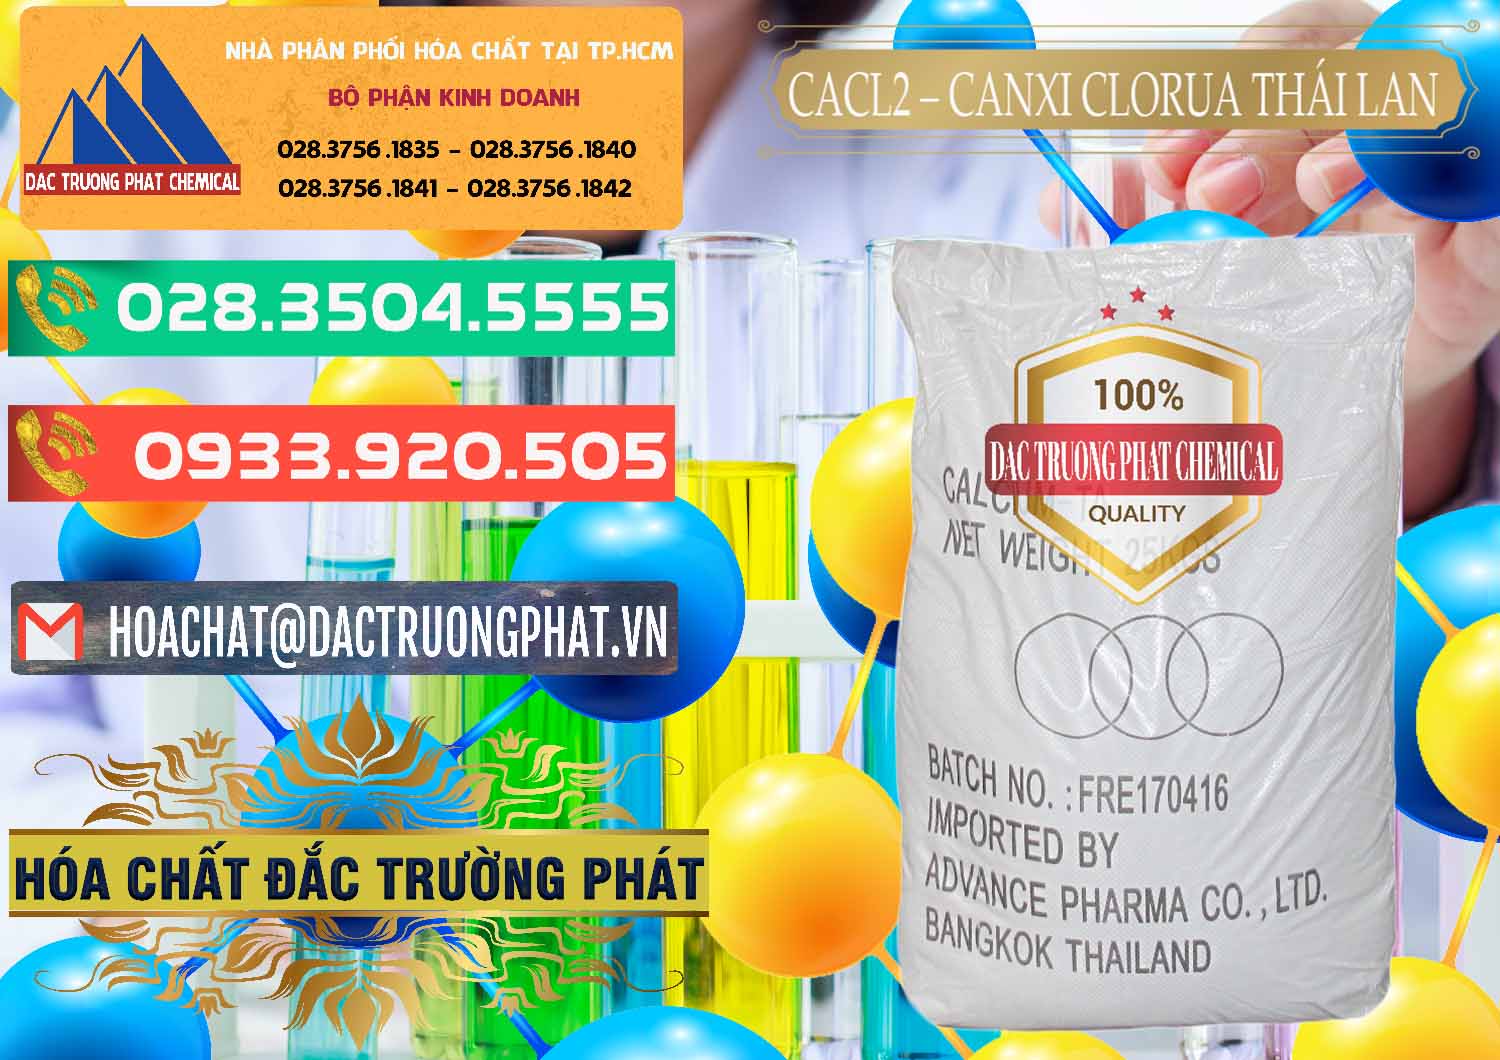 Đơn vị cung ứng và bán CaCl2 – Canxi Clorua 96% Thái Lan - 0042 - Chuyên cung cấp & phân phối hóa chất tại TP.HCM - congtyhoachat.com.vn